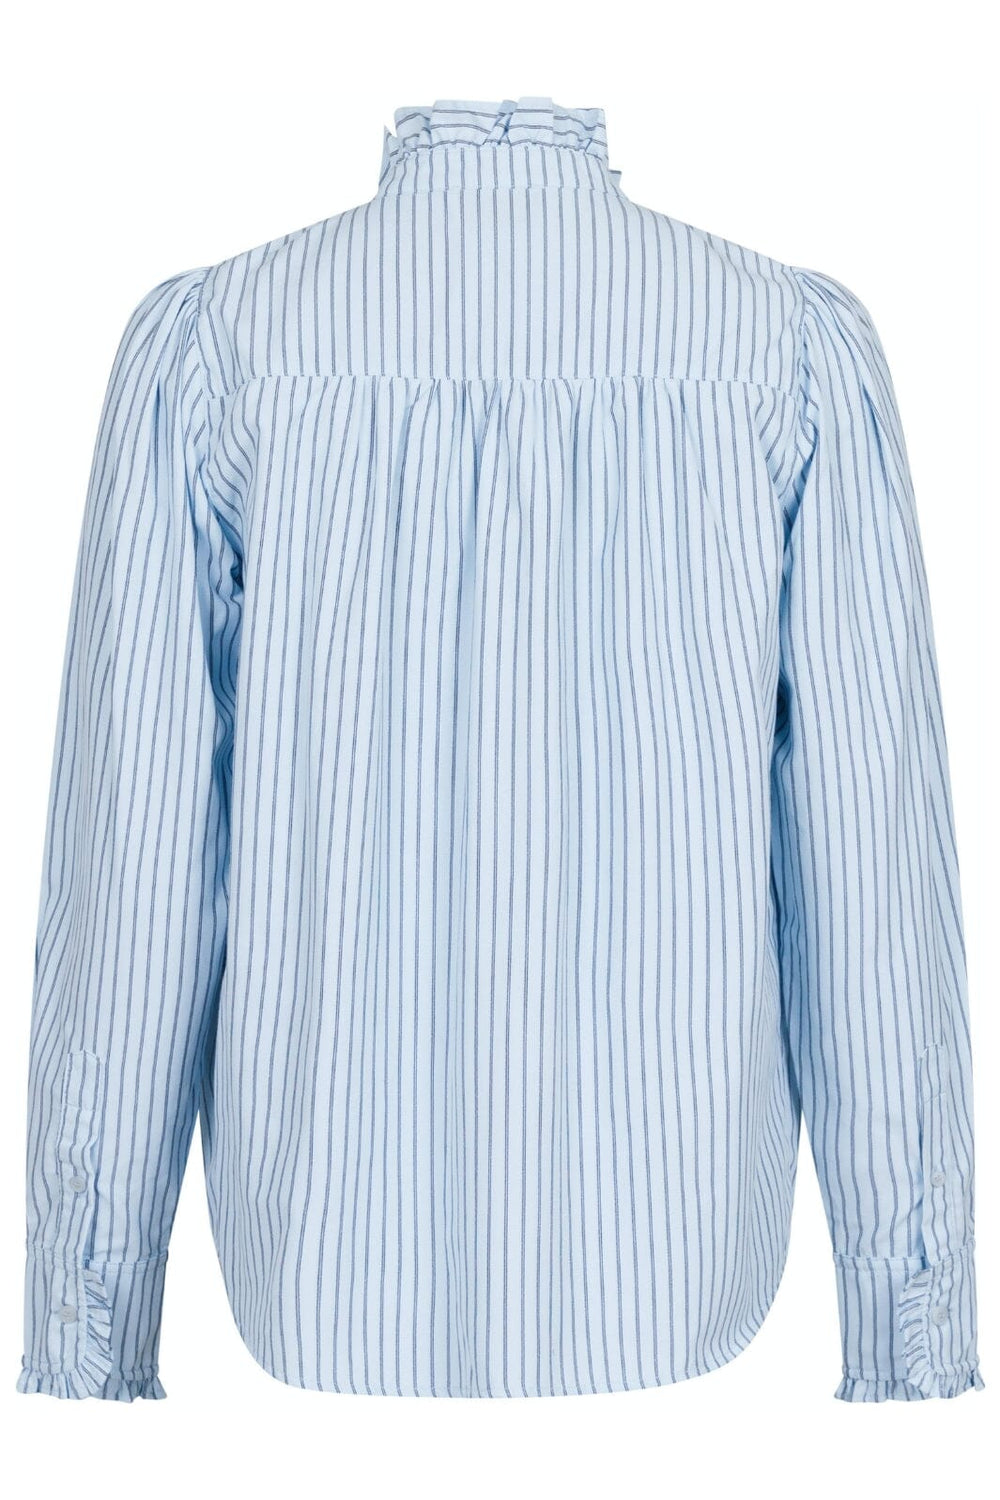 Neo Noir - Justine Stripe Shirt - Light Blue Skjorter 